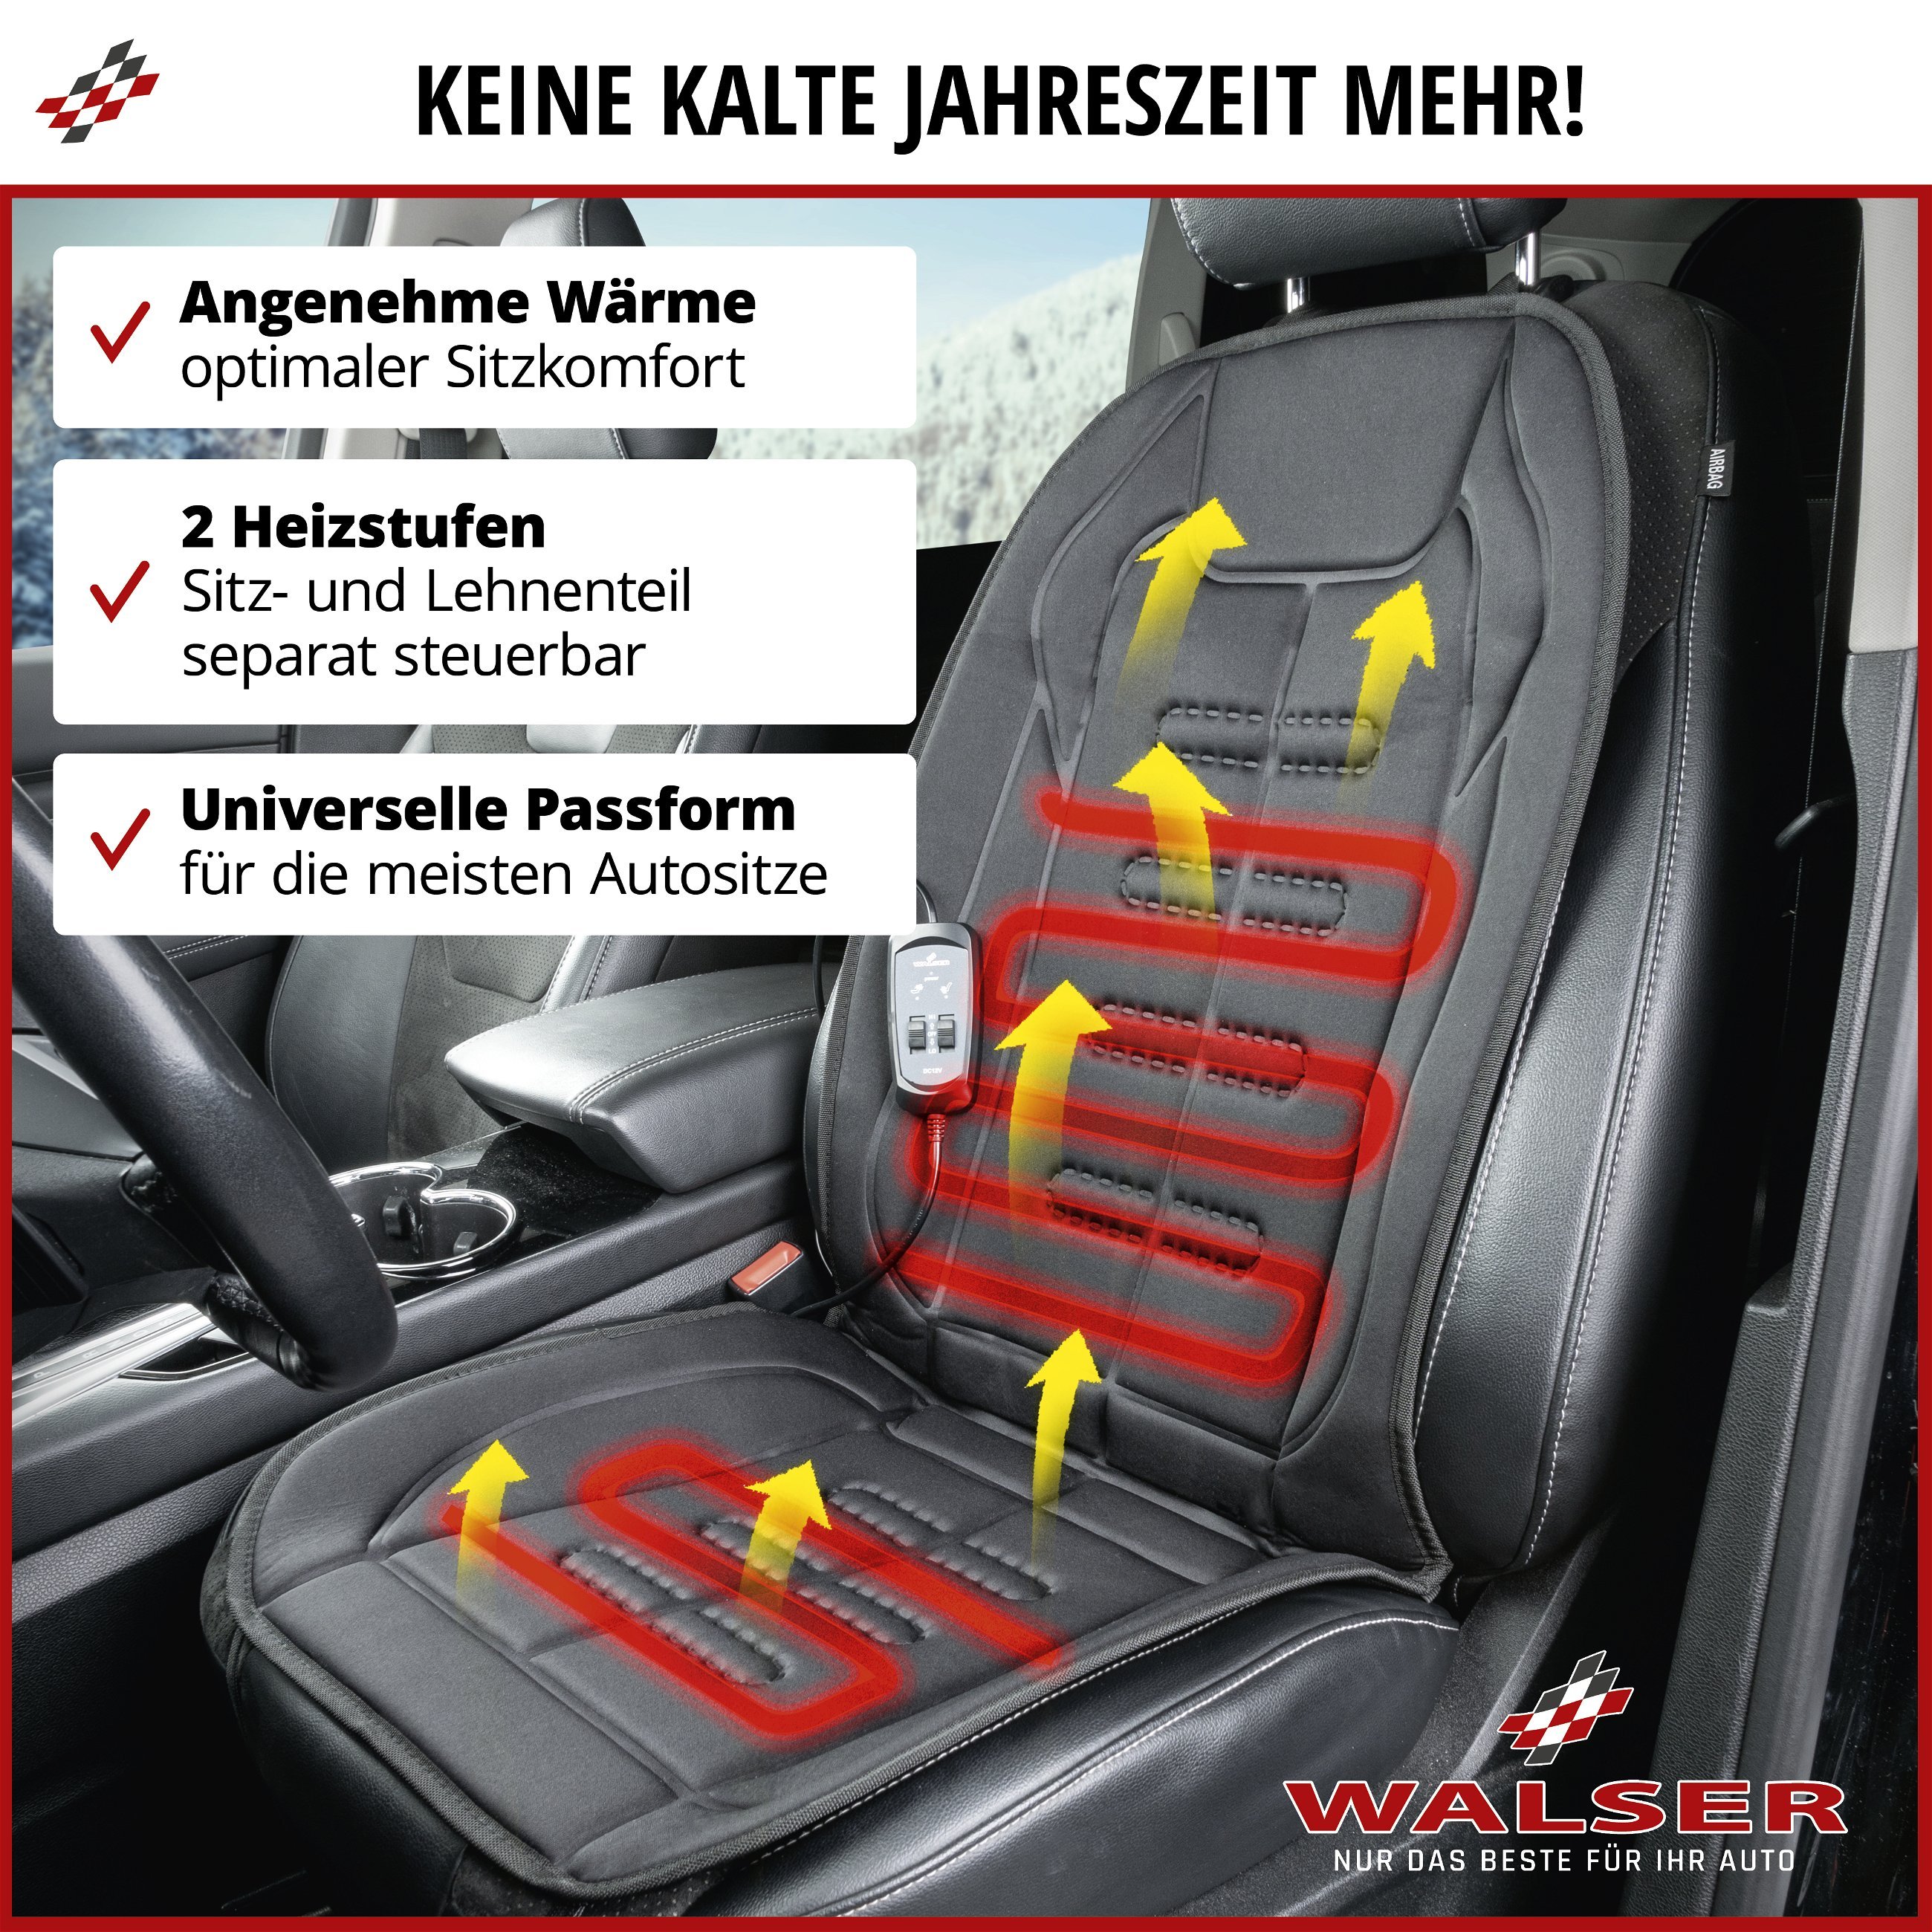 PKW Sitzauflage Caldo, Sitzaufleger Lehne & Sitzteil separat beheizbar, Autositz Heizkissen mit 12-Volt-Stecker